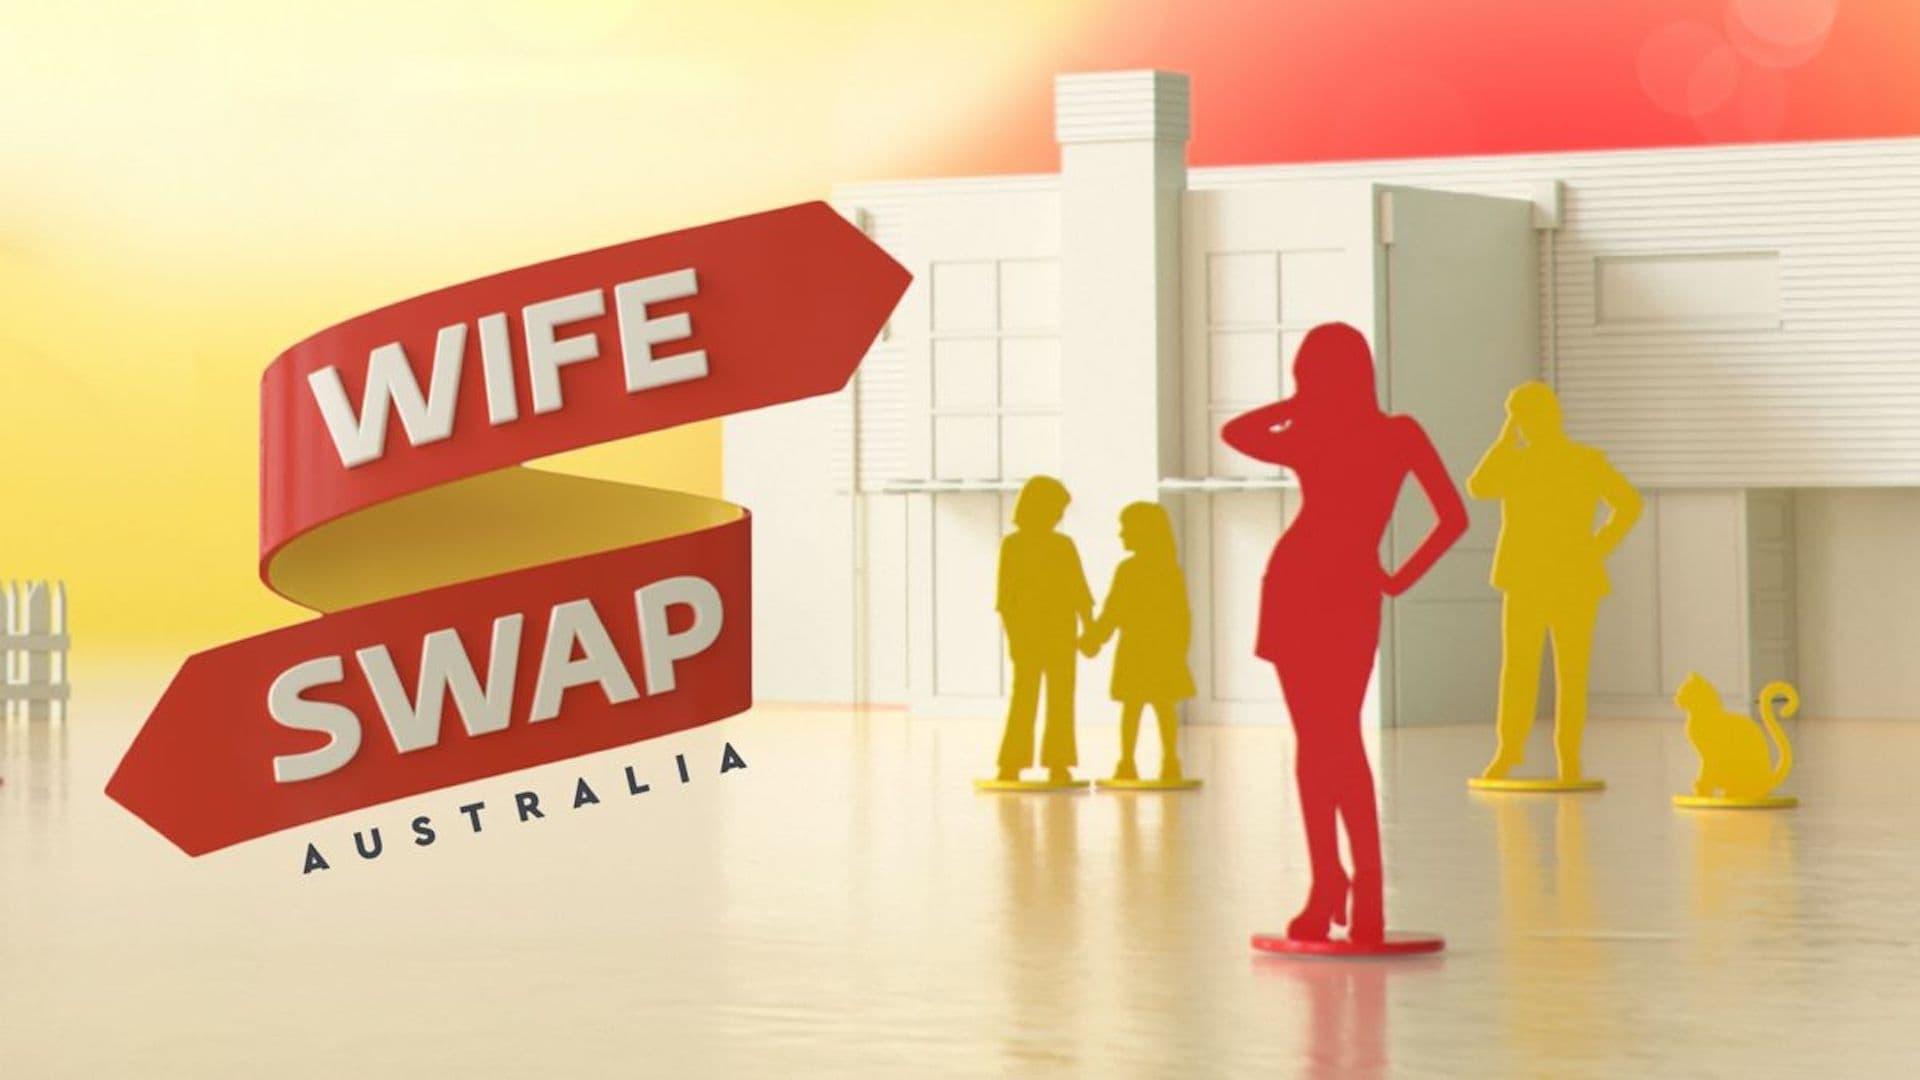 Wife Swap Australia backdrop